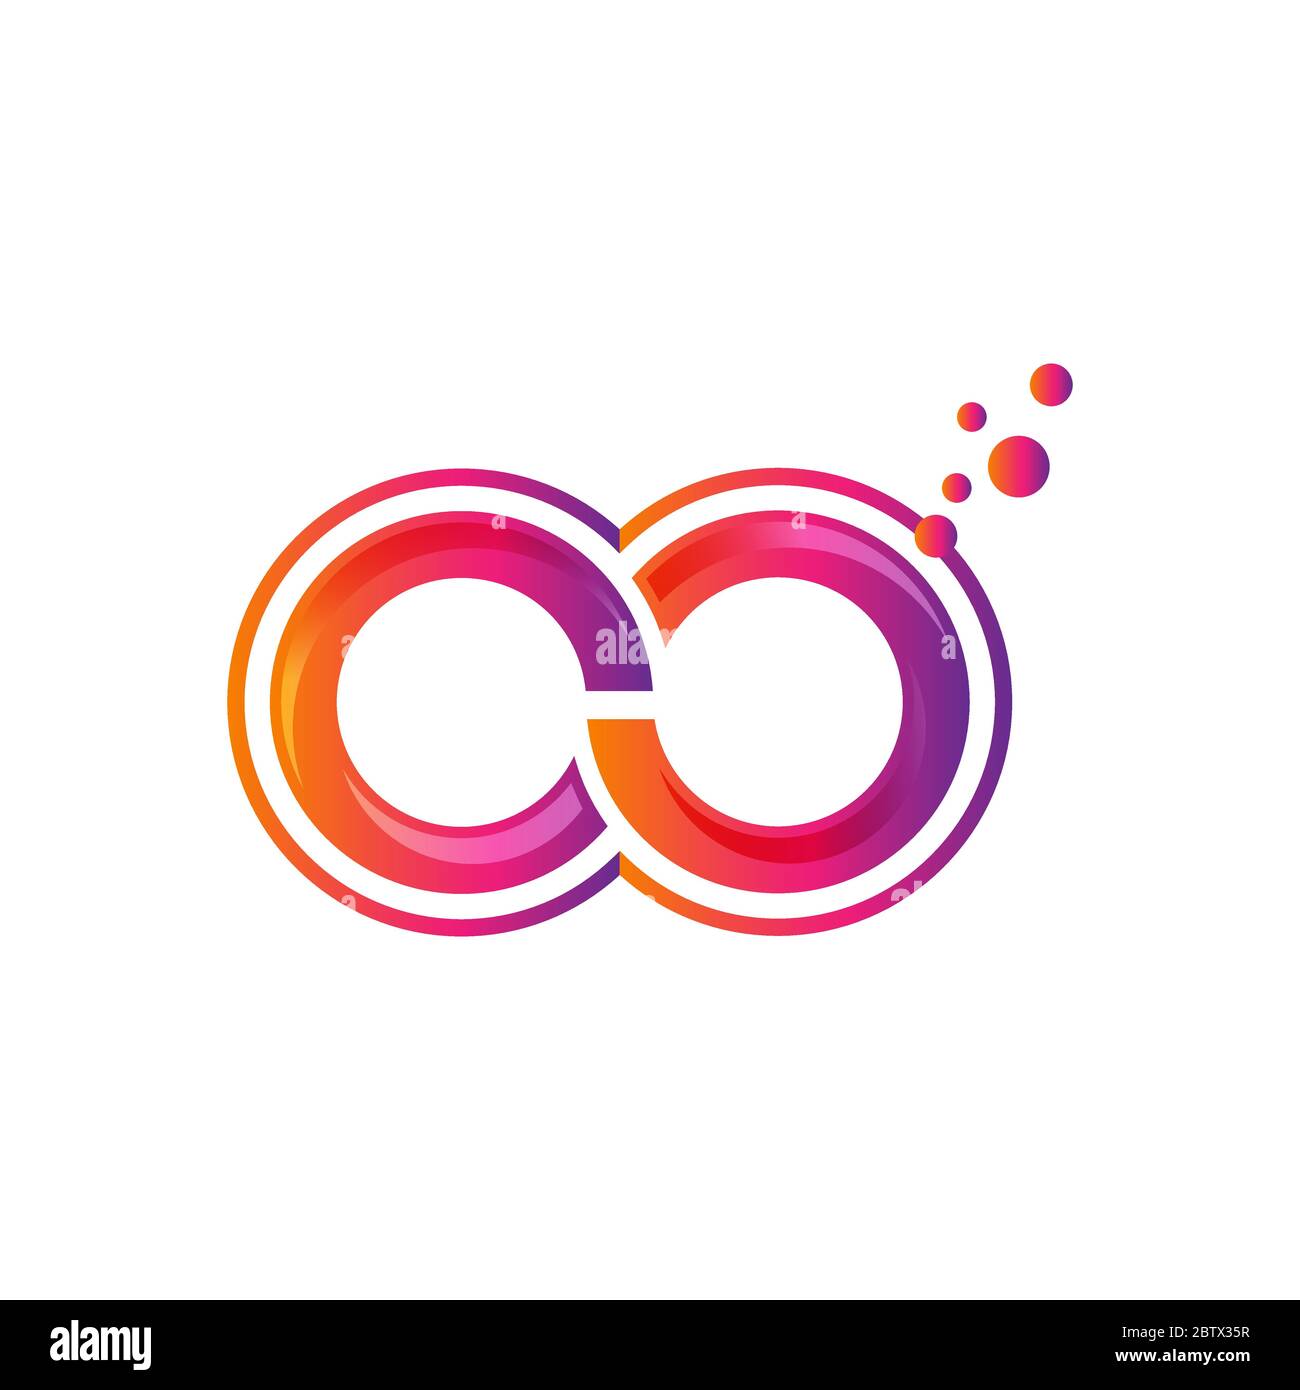 Infinity logo vector template, Creative Infinity logo design concept Stock Vector